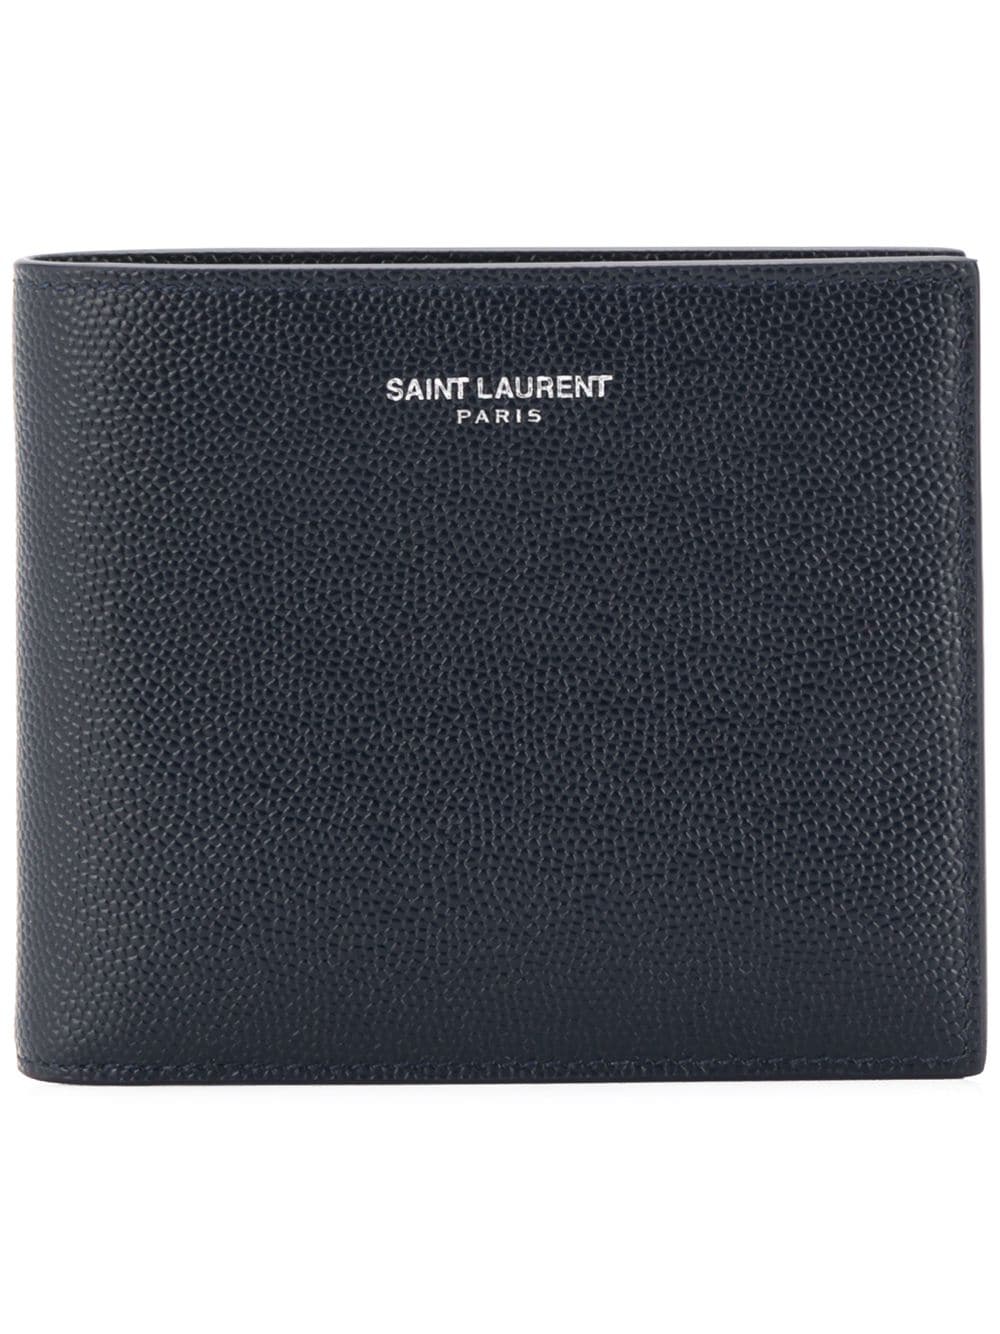 Saint Laurent Men's YSL Leather Wallet